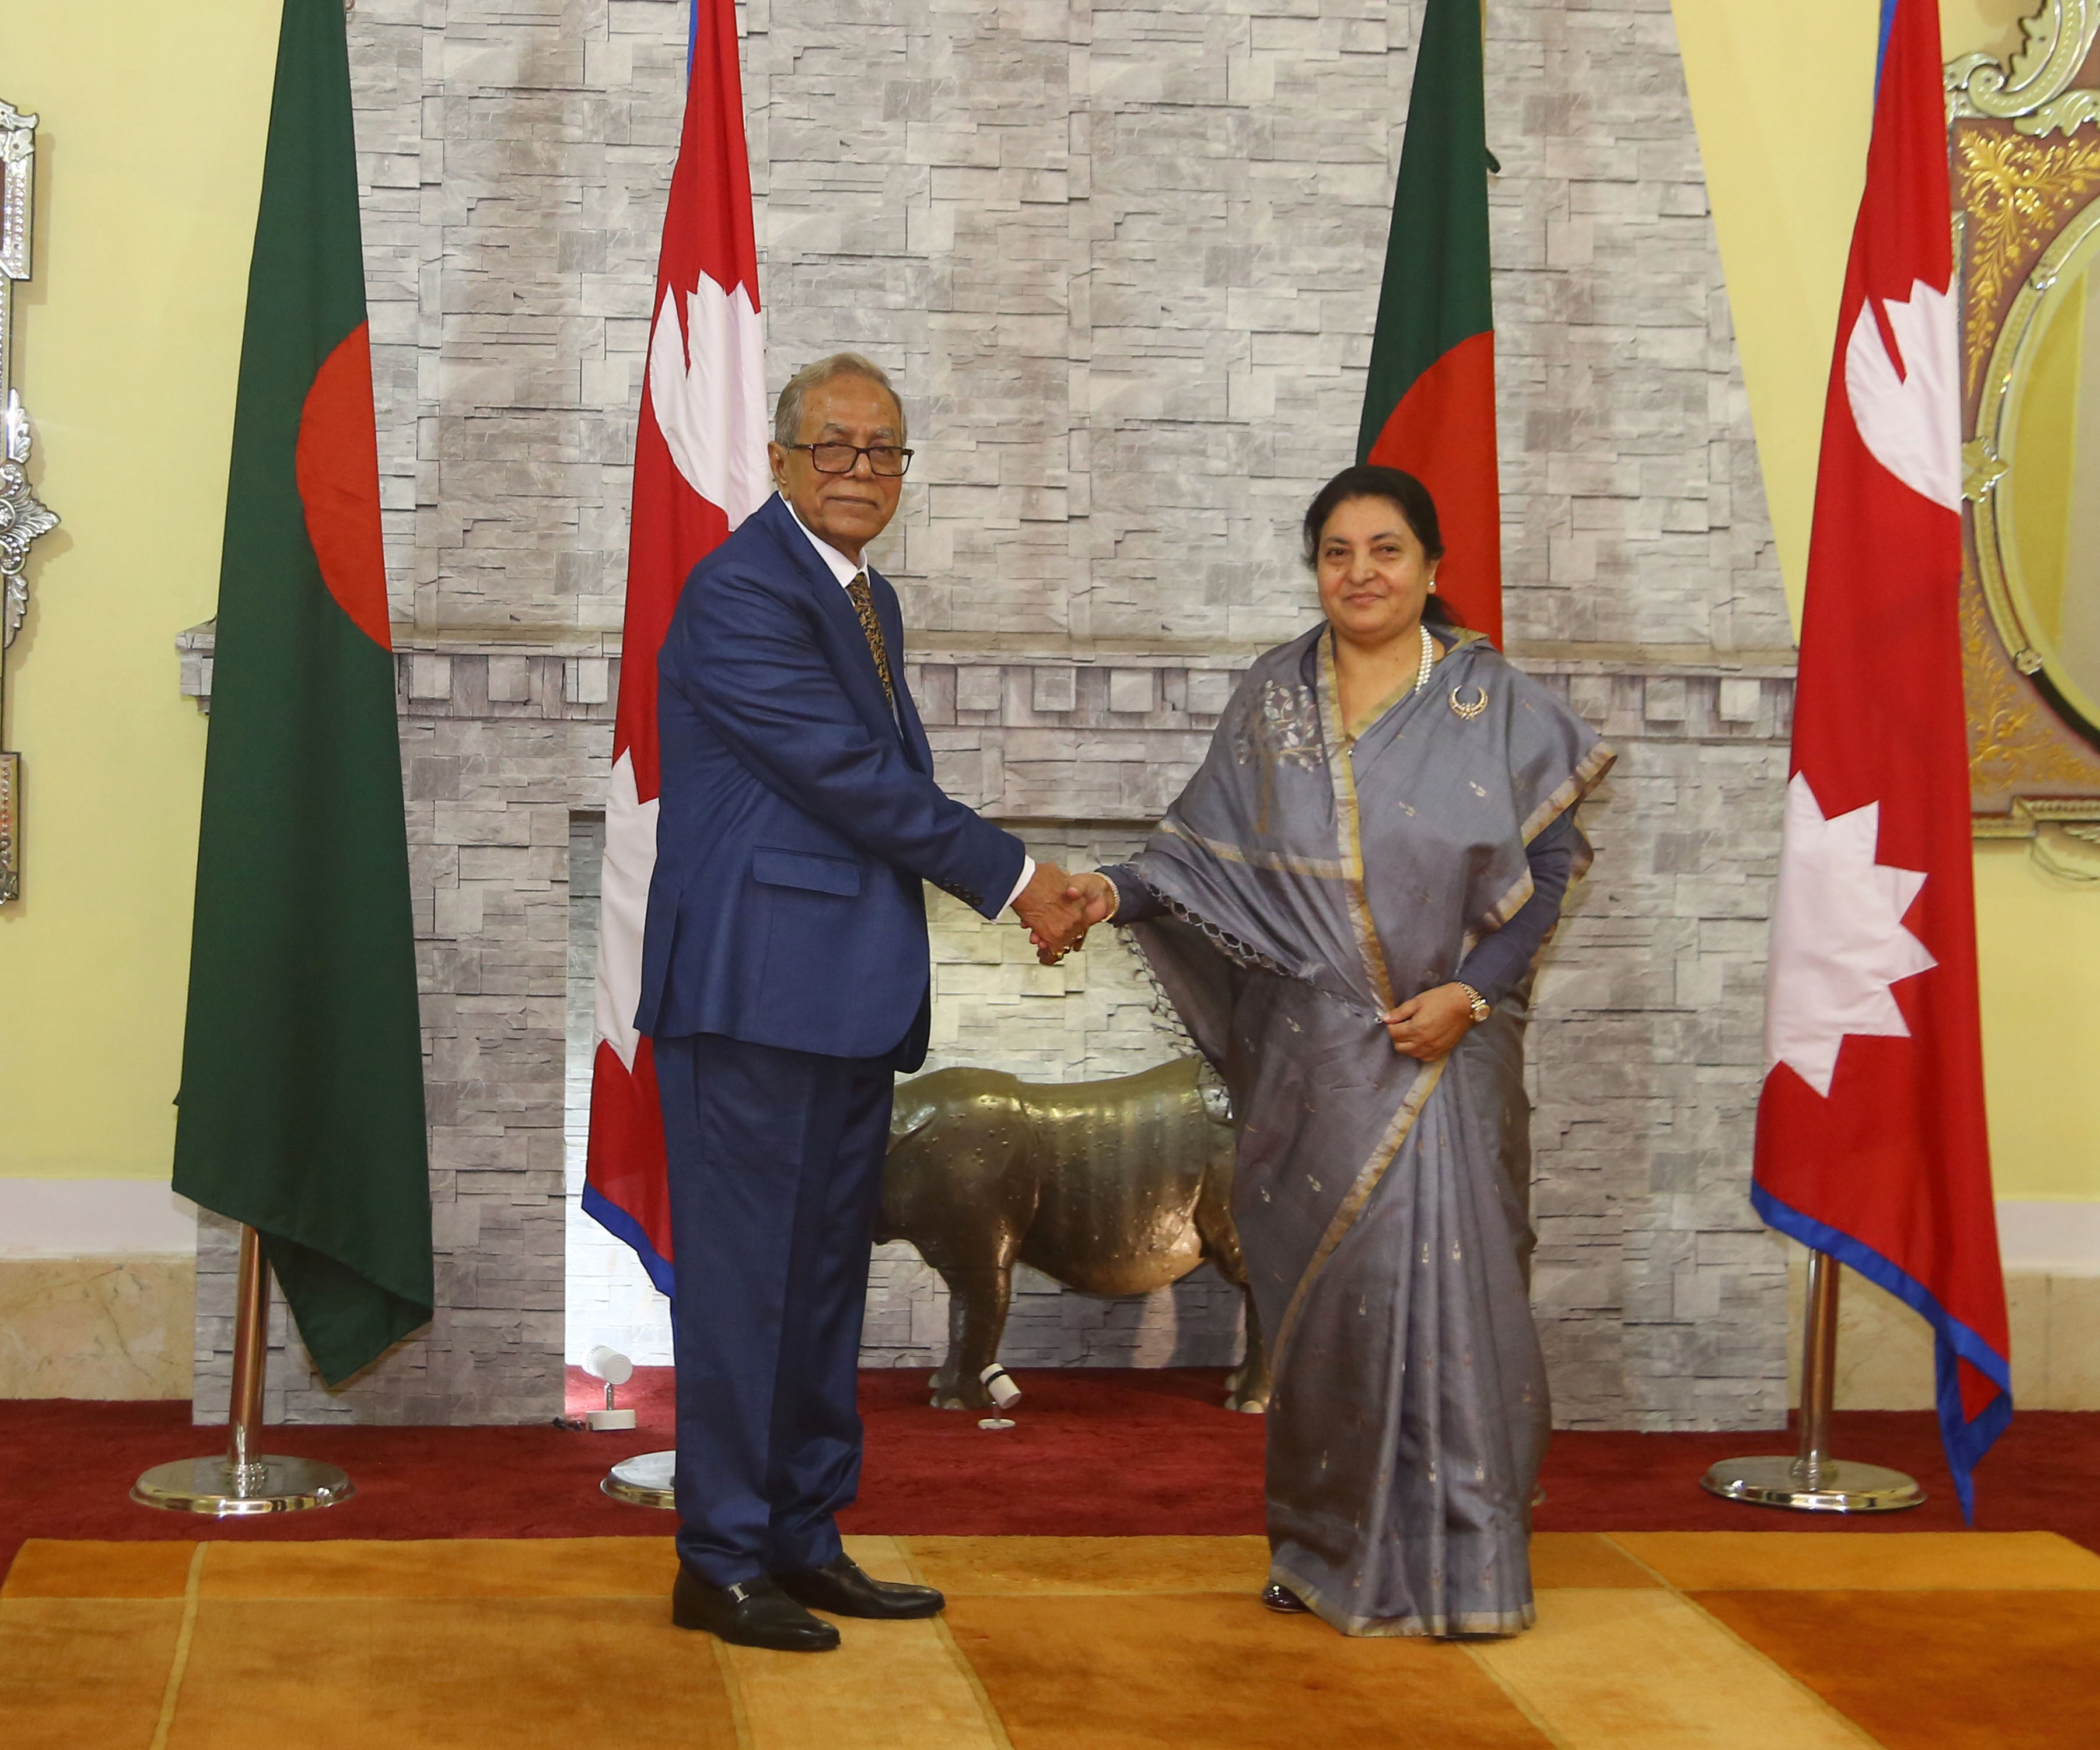 राष्ट्रपति भण्डारी र बंगलादेशका समकक्षी हमिदबीच शिष्टाचार भेट